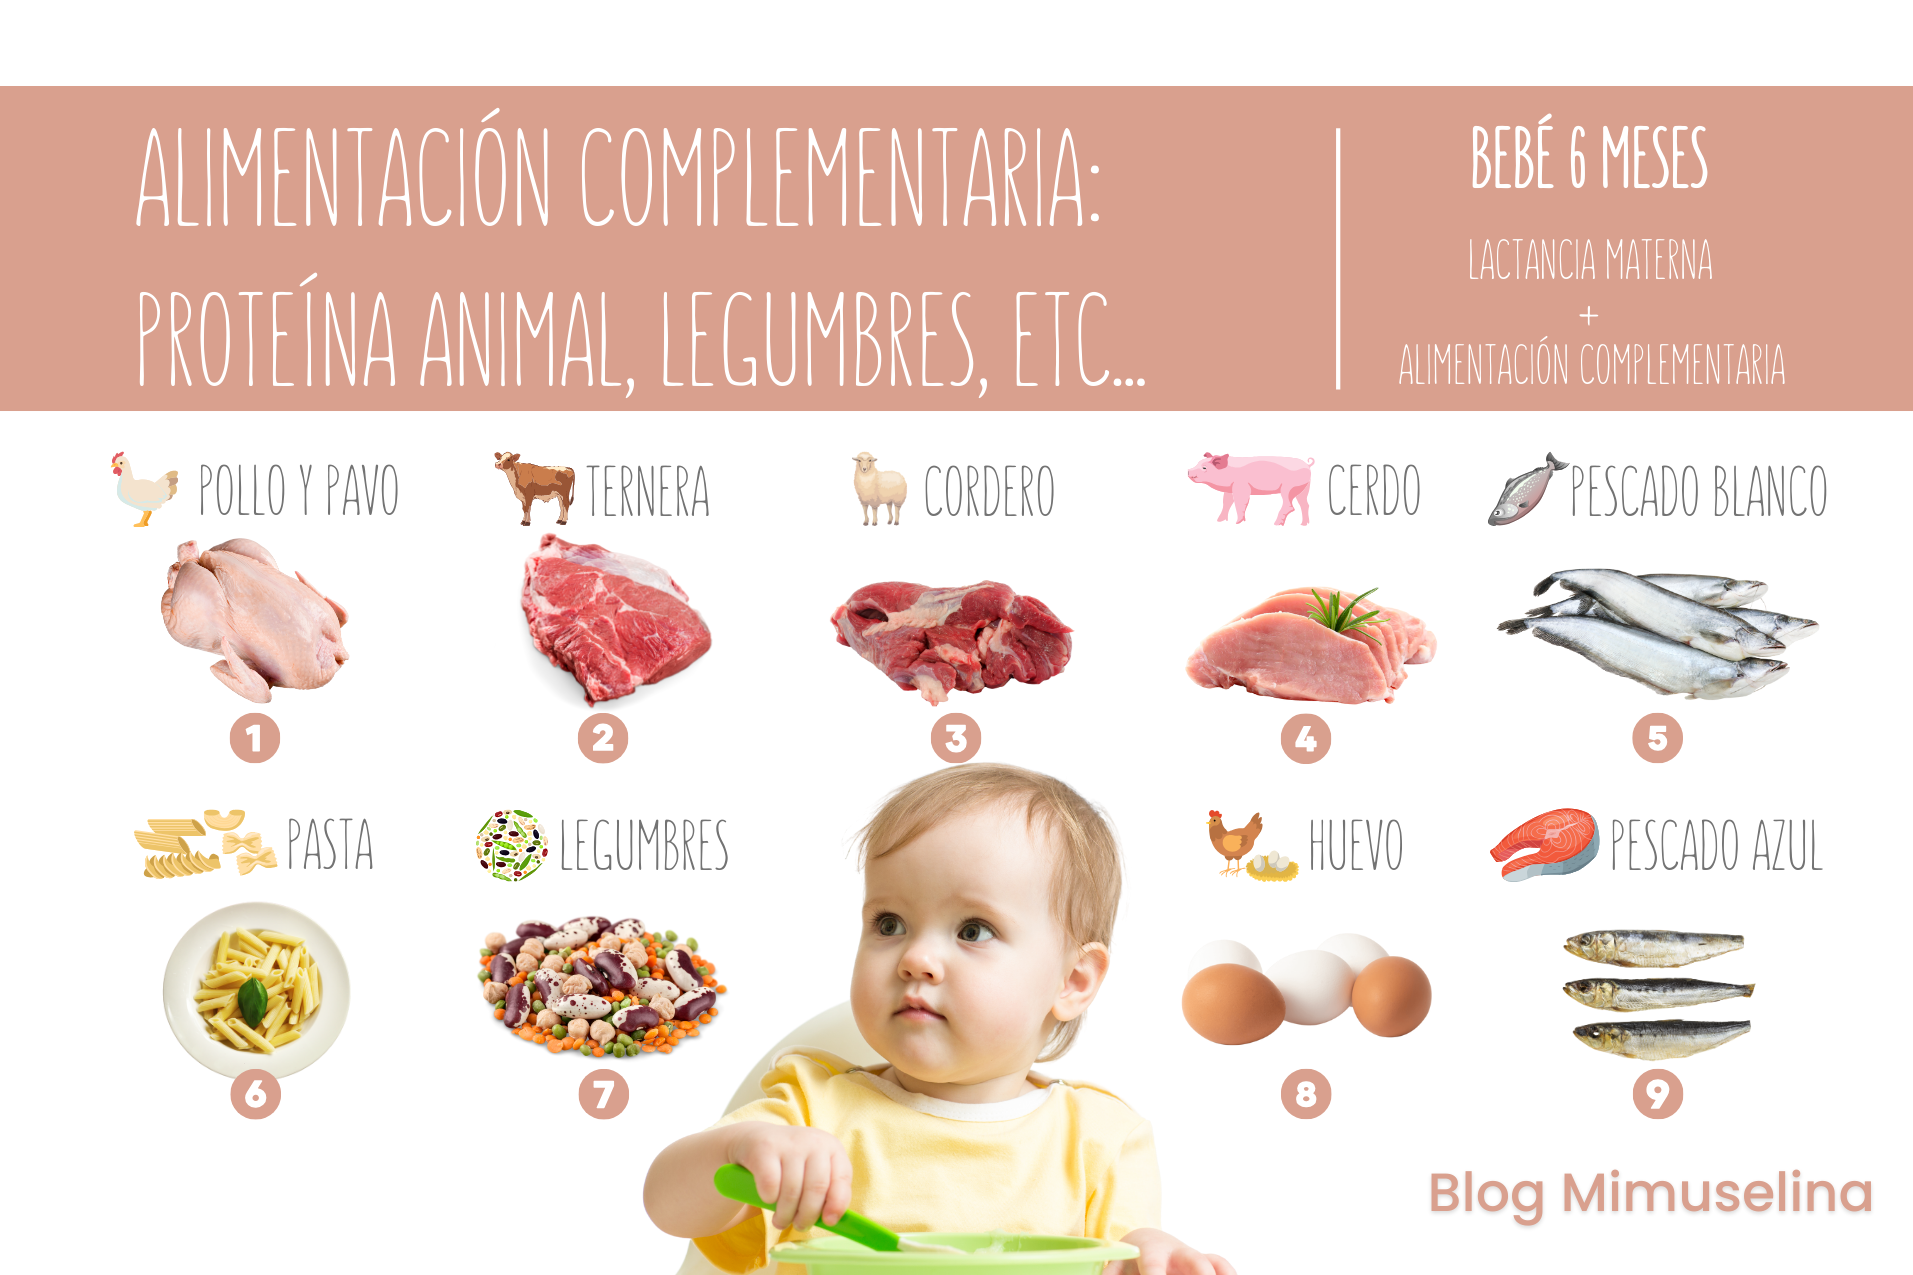 Alimentación complementaria bebé: carne, pescado, huevo, legumbres